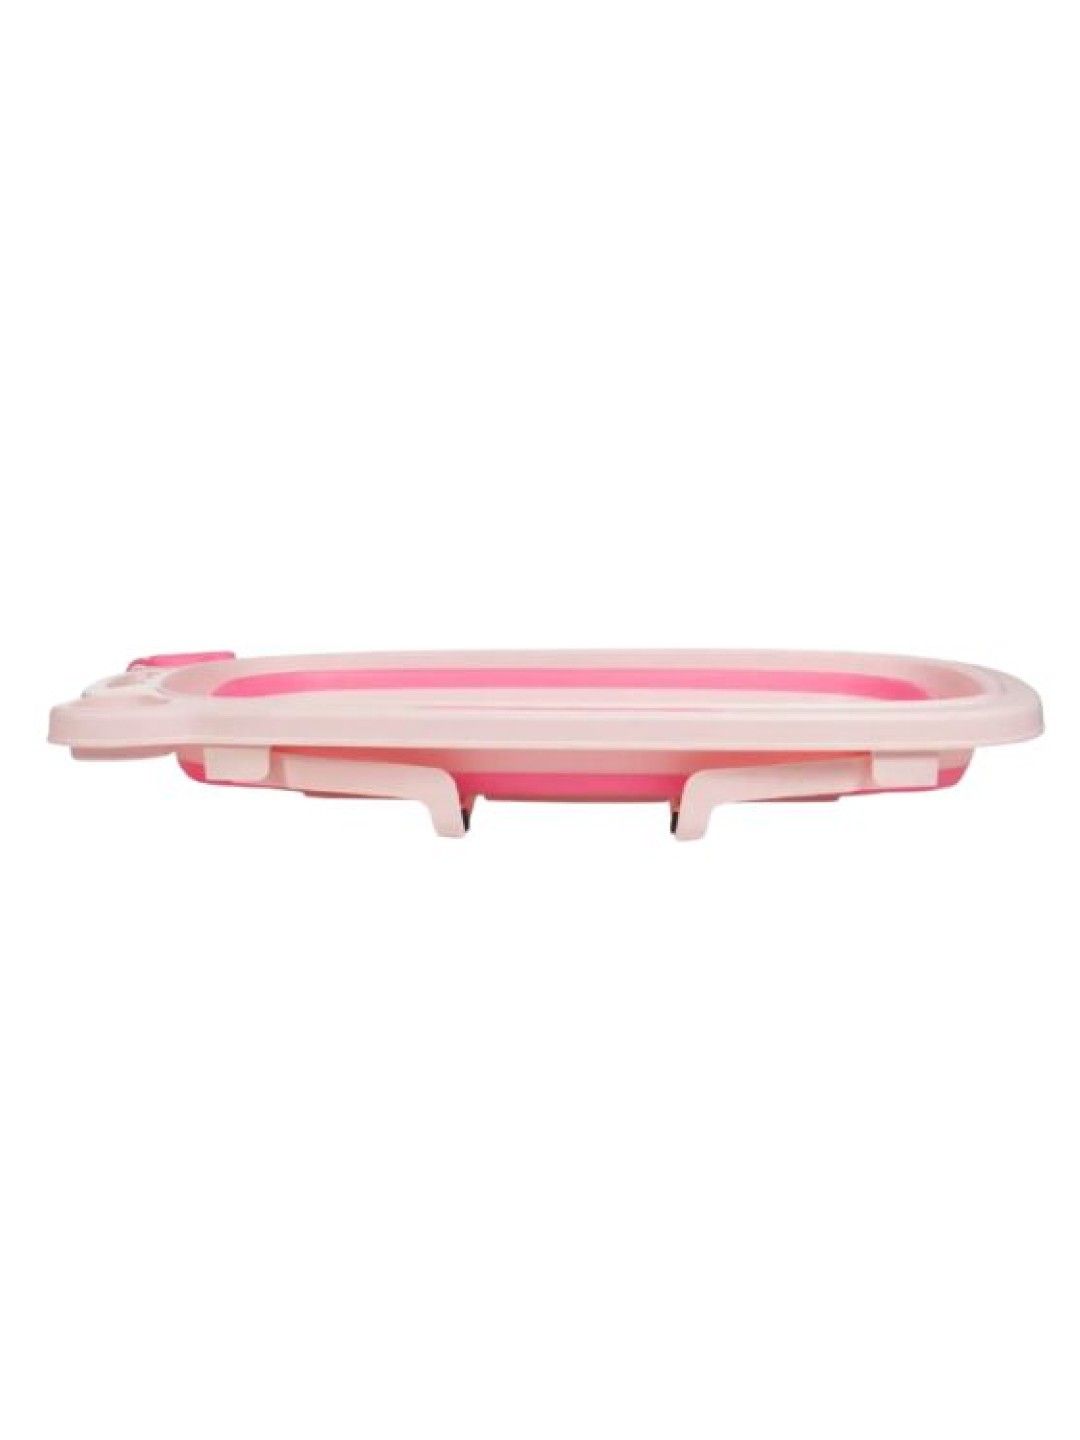 Juju Nursery Collapsible Baby to Toddler Bath Tub Set (Pink) (Pink- Image 3)